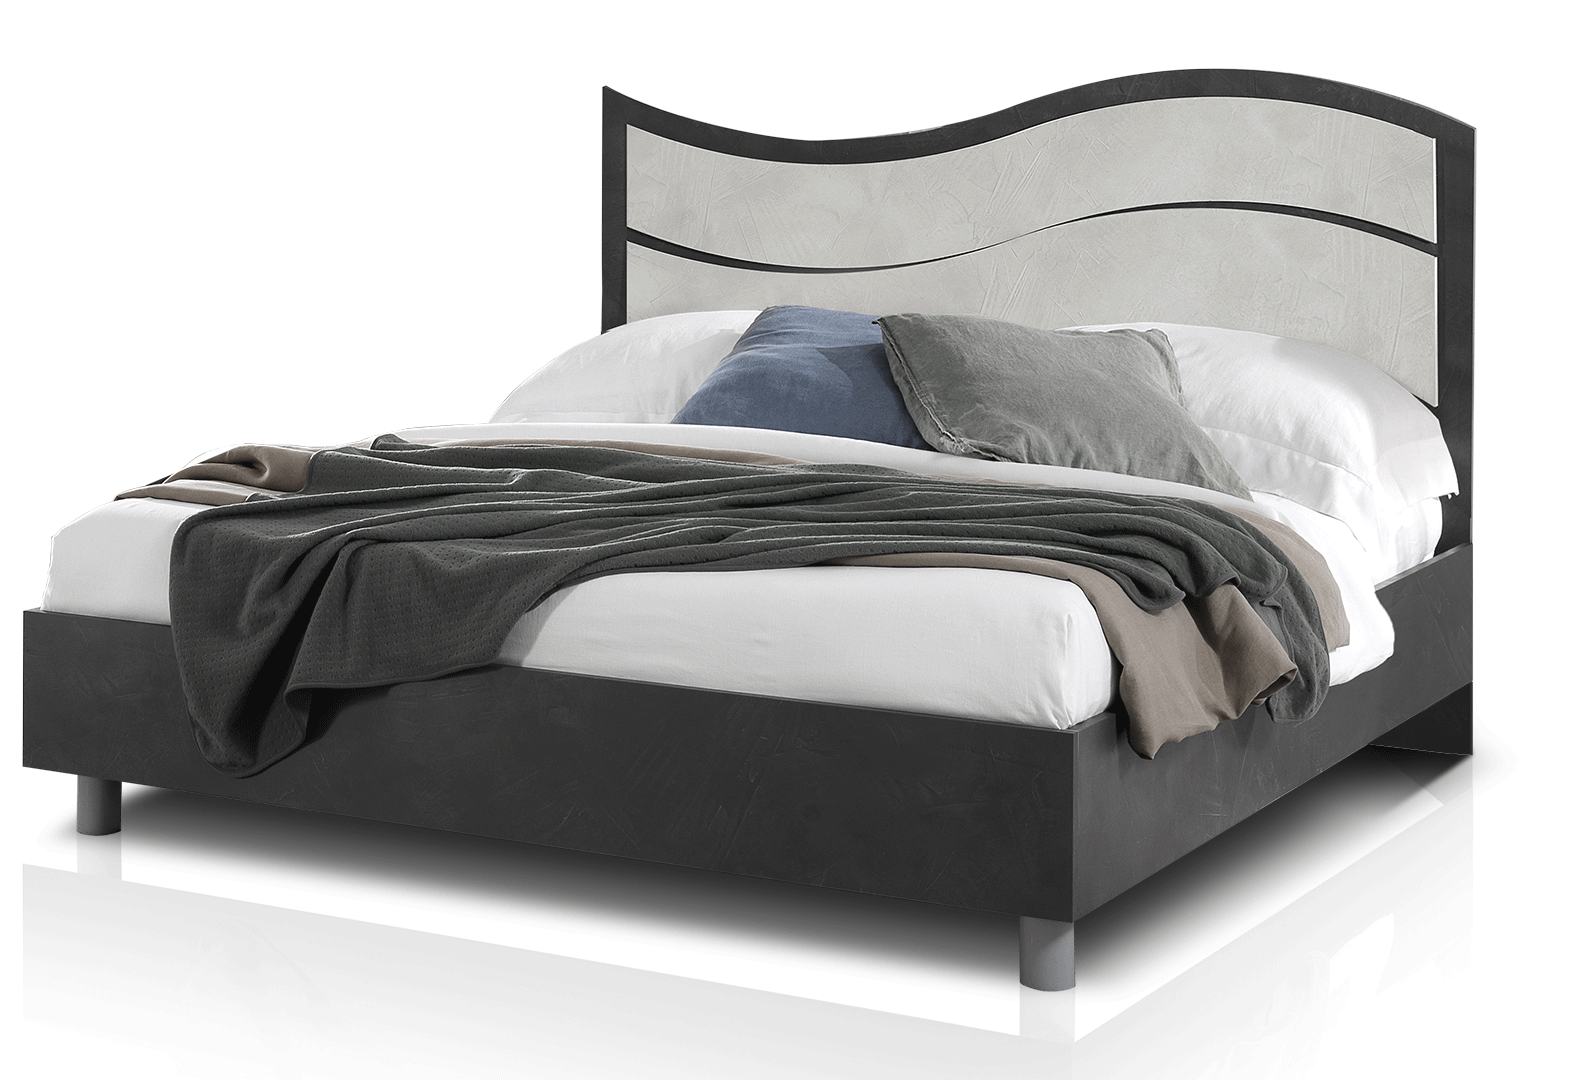 Bedroom Furniture Nightstands Ischia Bed